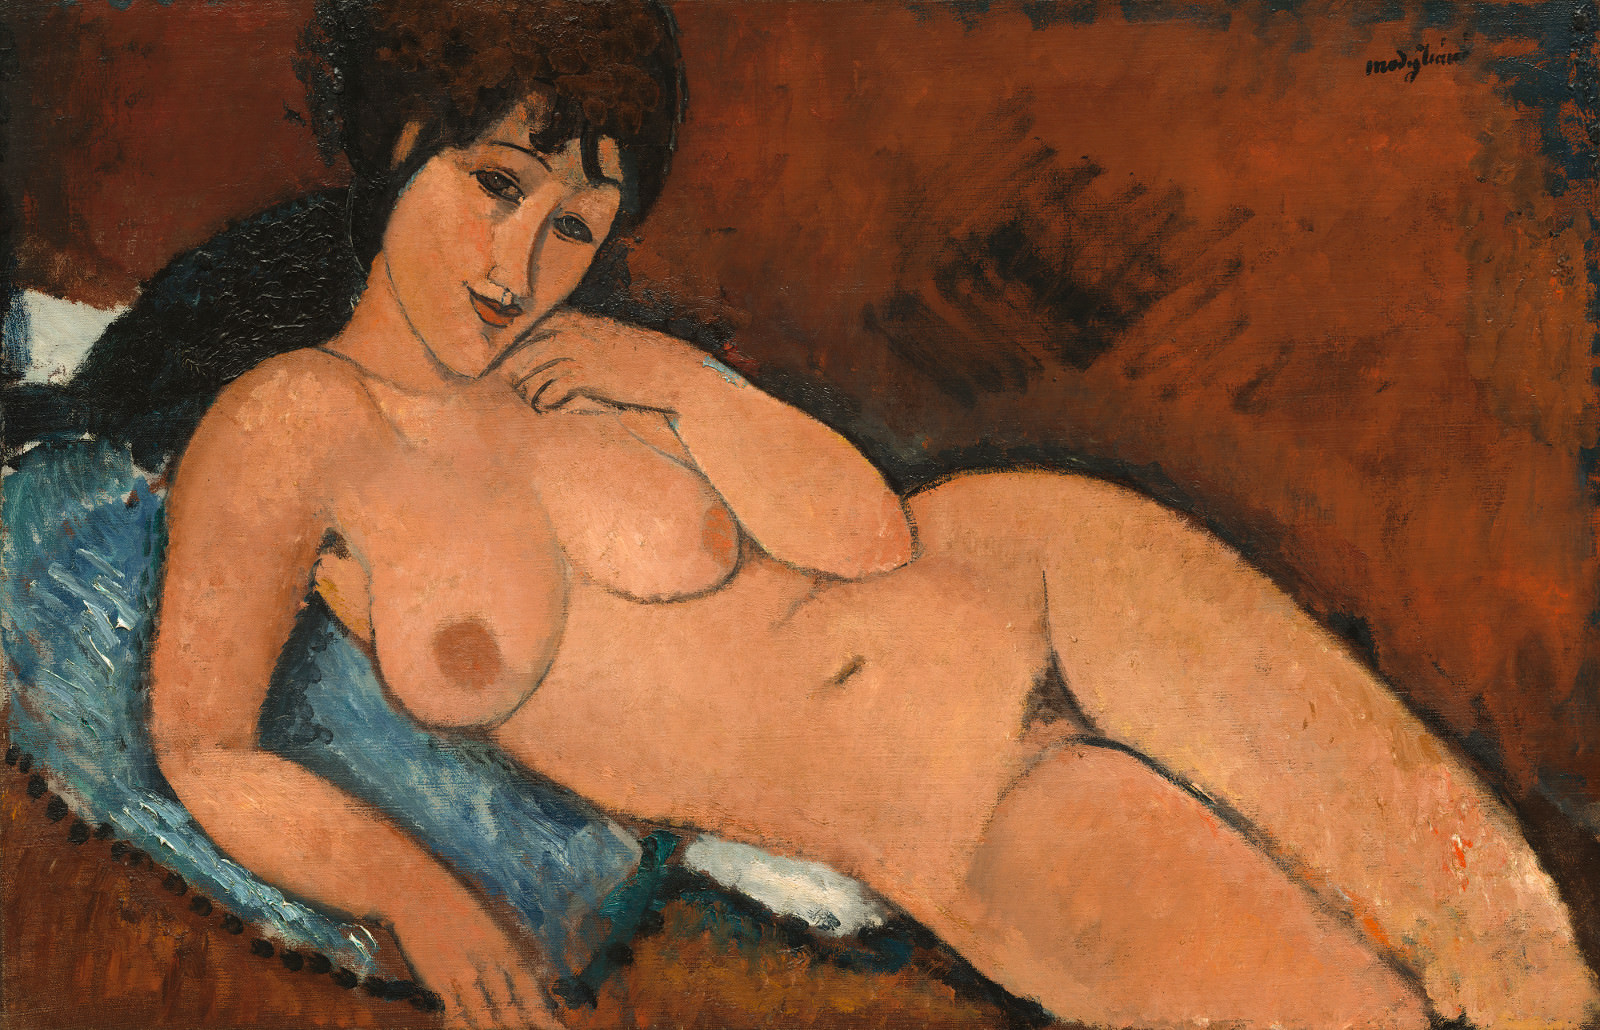 Figue. 9 - Nu sur le coussin bleu, Amedeo Modigliani, 1917, L'huile de lin sur, 65.4 x 100.9 cm. National Gallery of Art, Washington. Chester Dale Collection.